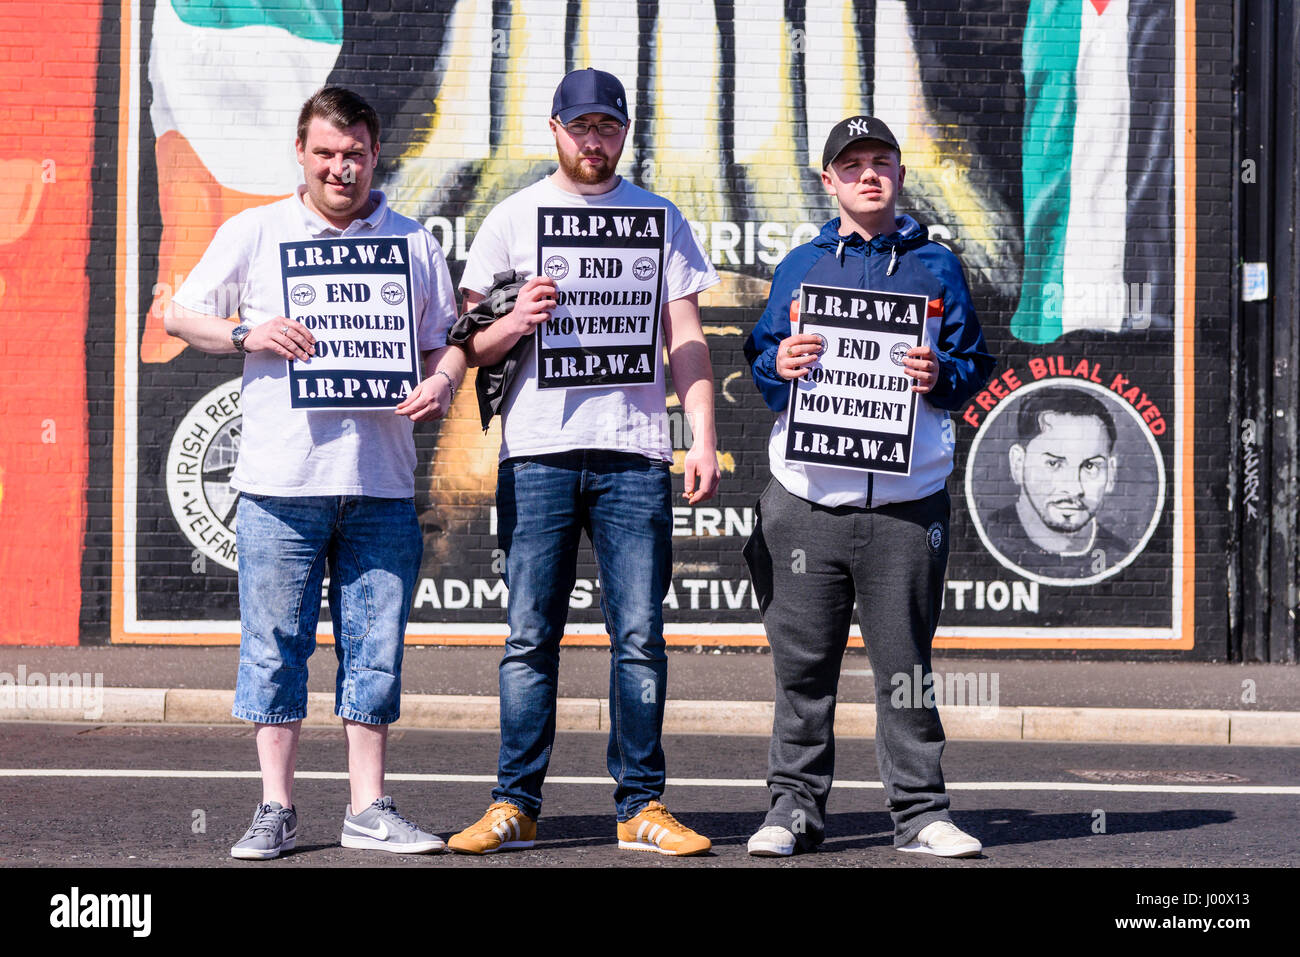 Nordirland. 08 Apr 2017 - irisch republikanischen Gefangenen Welfare Association hält weiße Linie Mahnwache gegen die Bedingungen in Nordirland Gefängnisse. Stockfoto